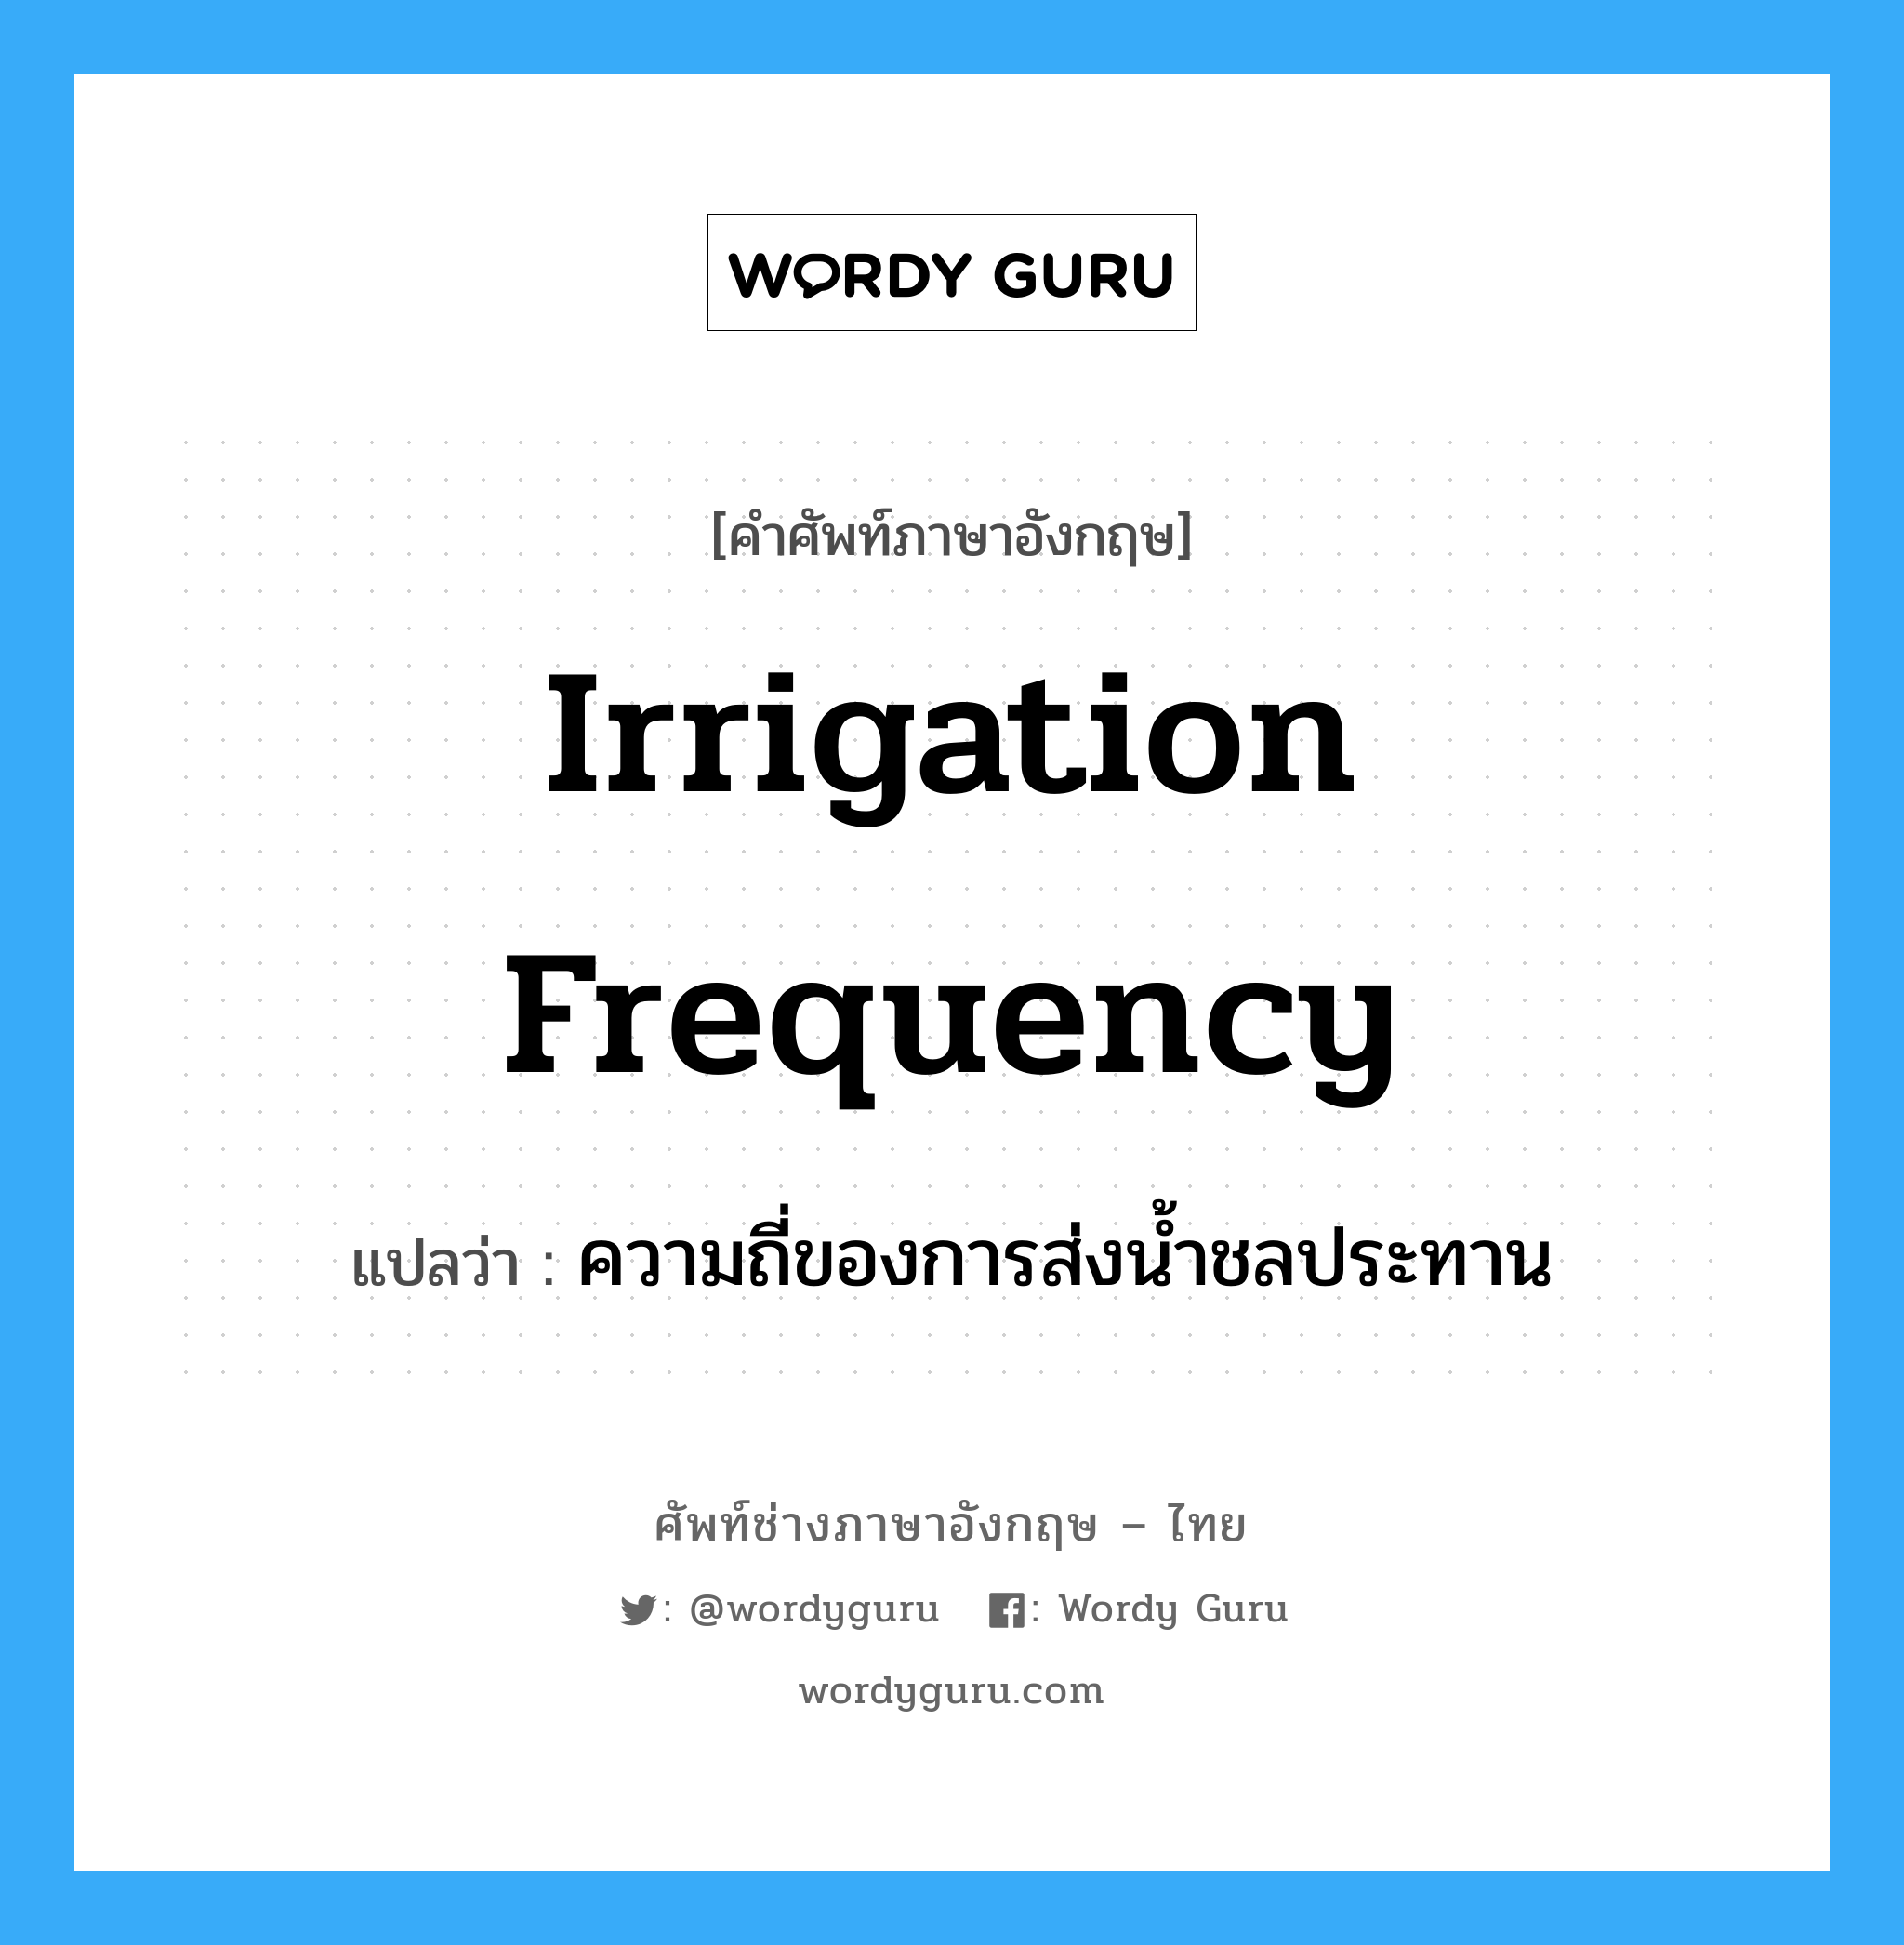 irrigation frequency แปลว่า?, คำศัพท์ช่างภาษาอังกฤษ - ไทย irrigation frequency คำศัพท์ภาษาอังกฤษ irrigation frequency แปลว่า ความถี่ของการส่งน้ำชลประทาน